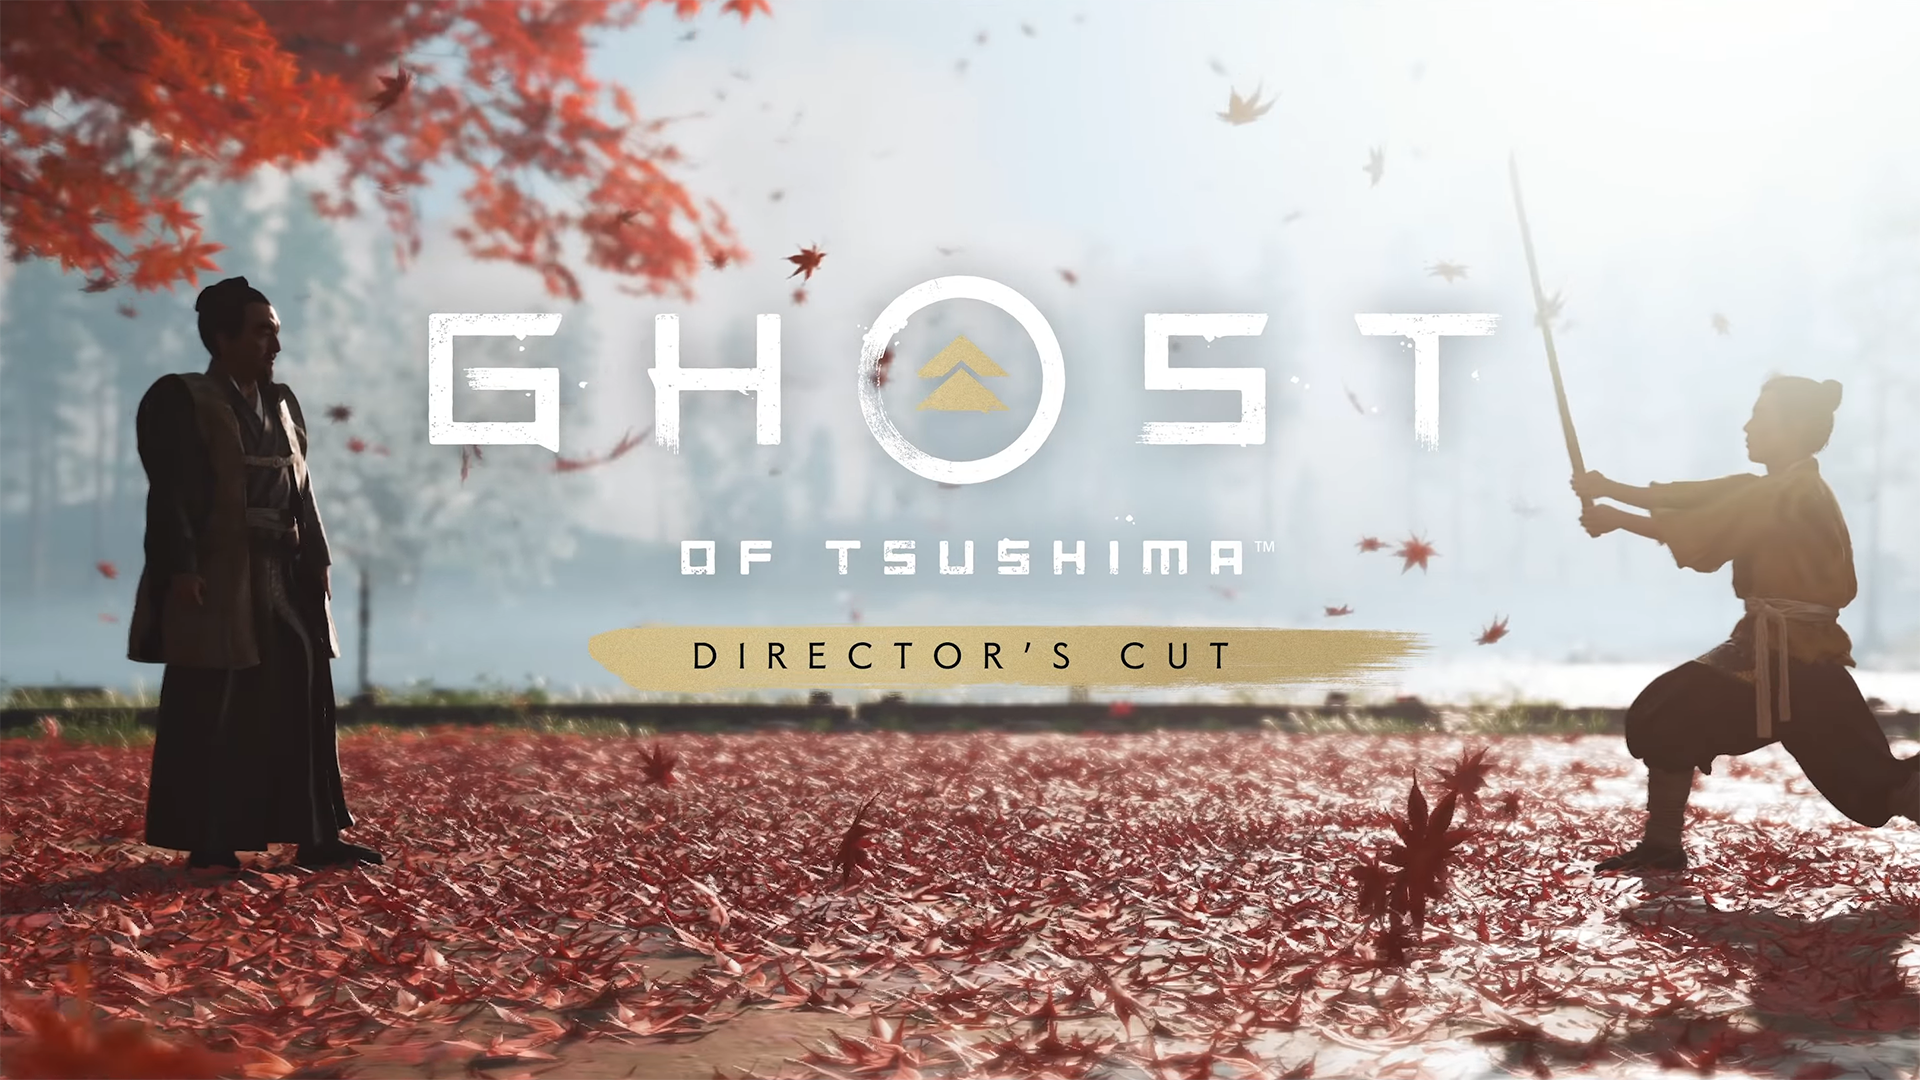 Ghost of Tsushima Director’s Cut เตรียมวางจำหน่าย 20 ส.ค. นี้